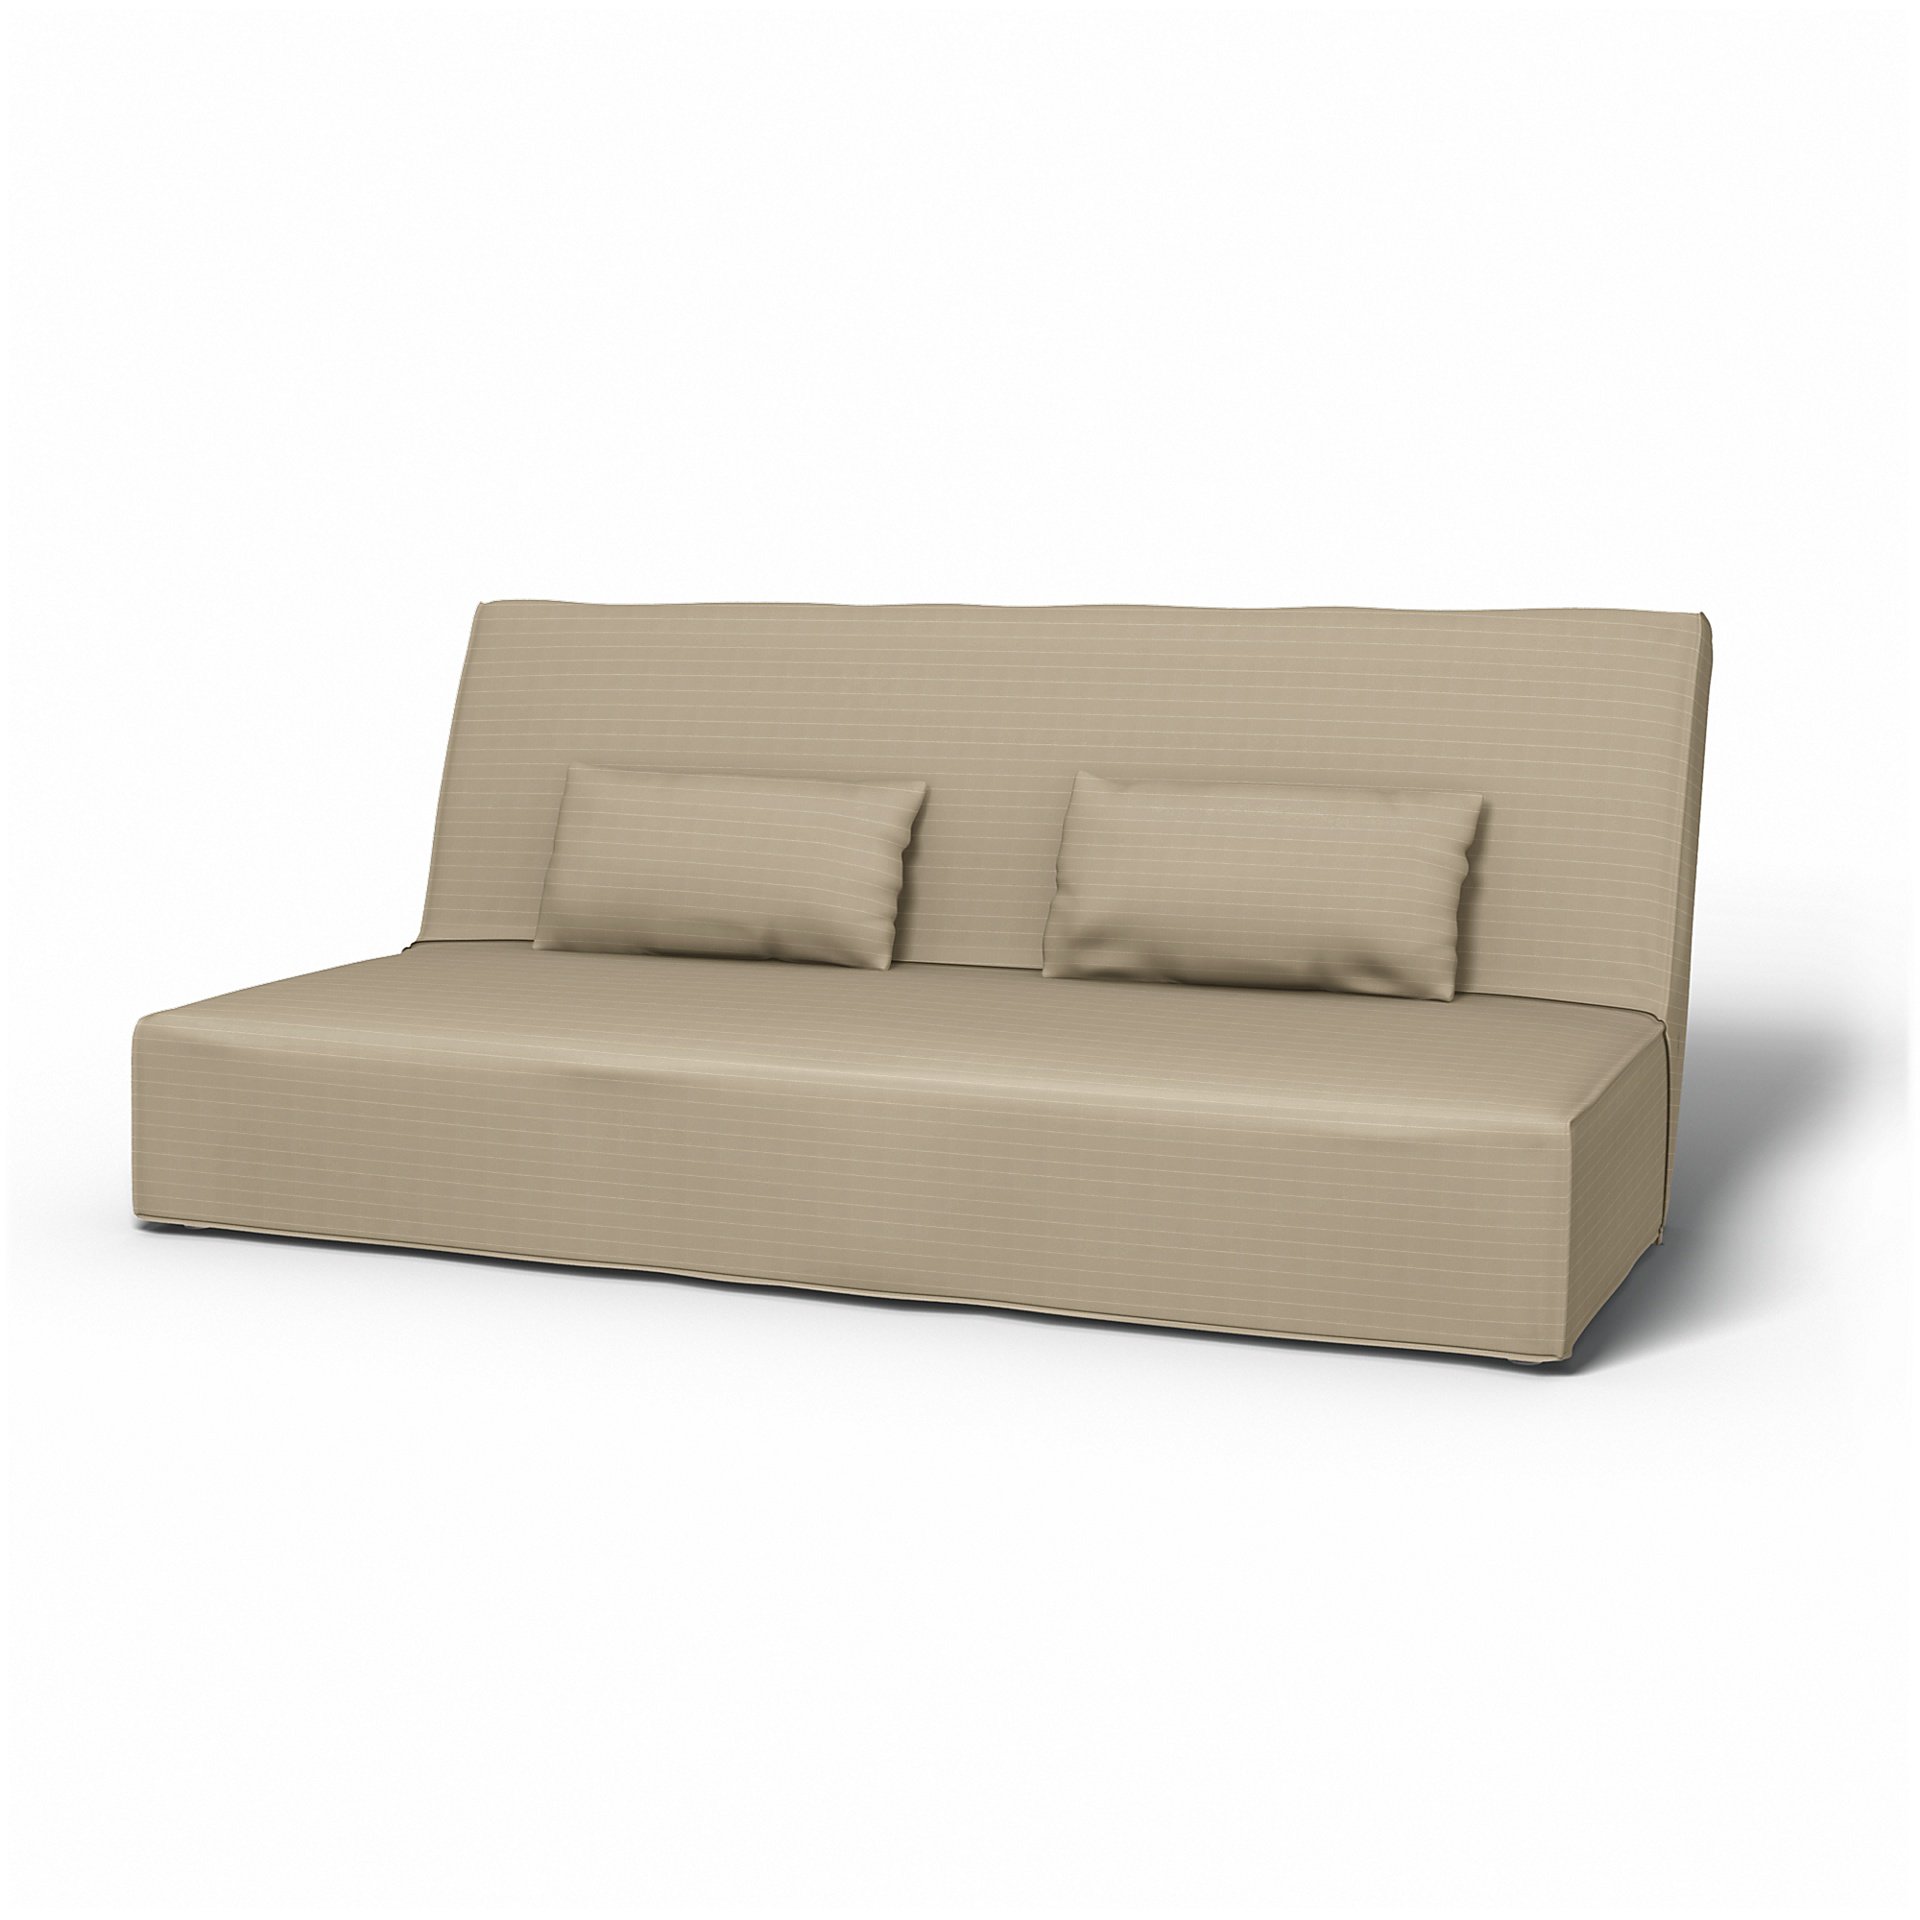 IKEA - Beddinge Sofa Bed Cover, Oyster, Velvet - Bemz